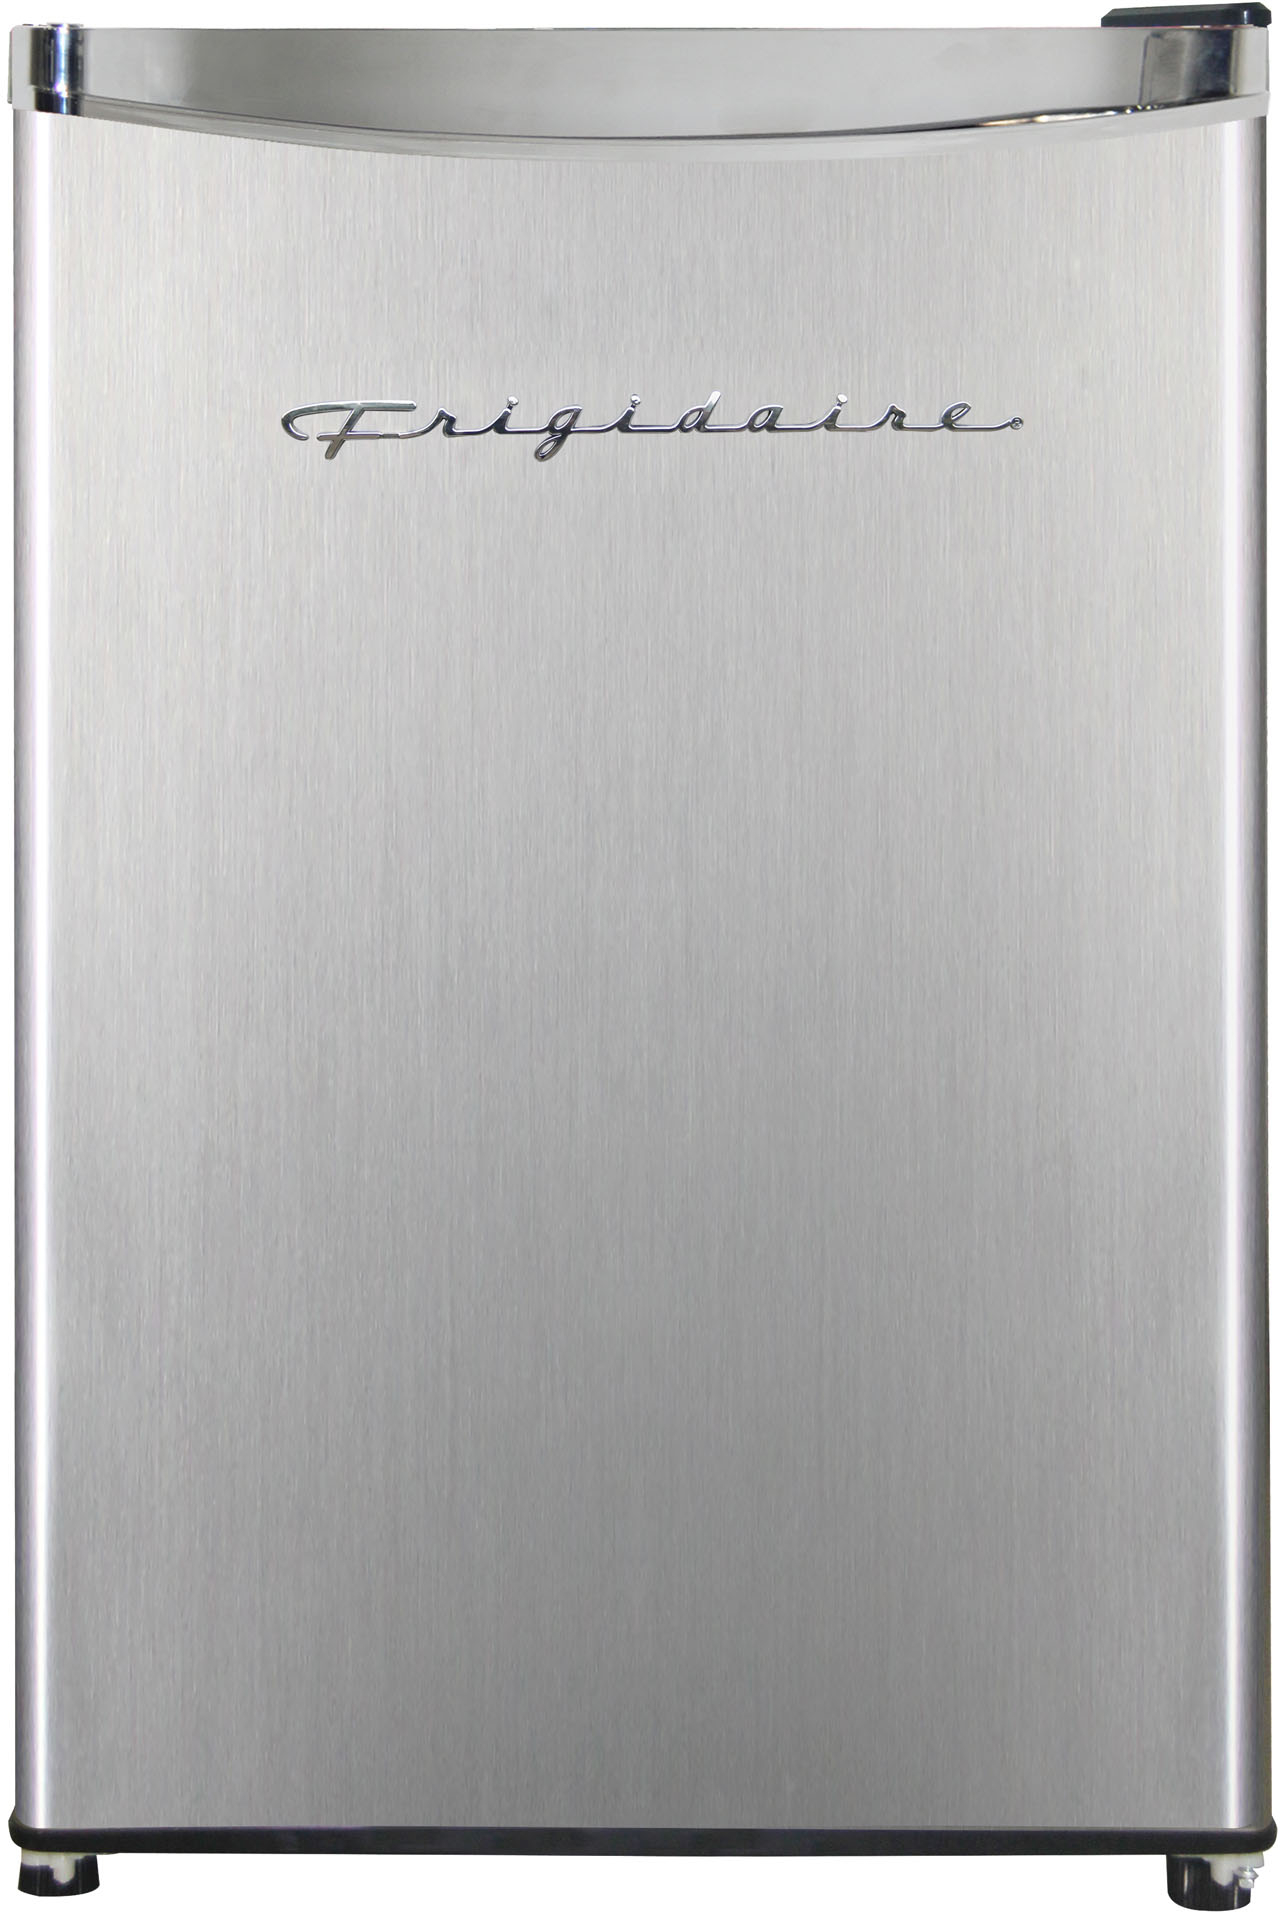 Frigidaire, 4.5 Cu. ft., 2 Door Compact Refrigerator-Chrome Trim